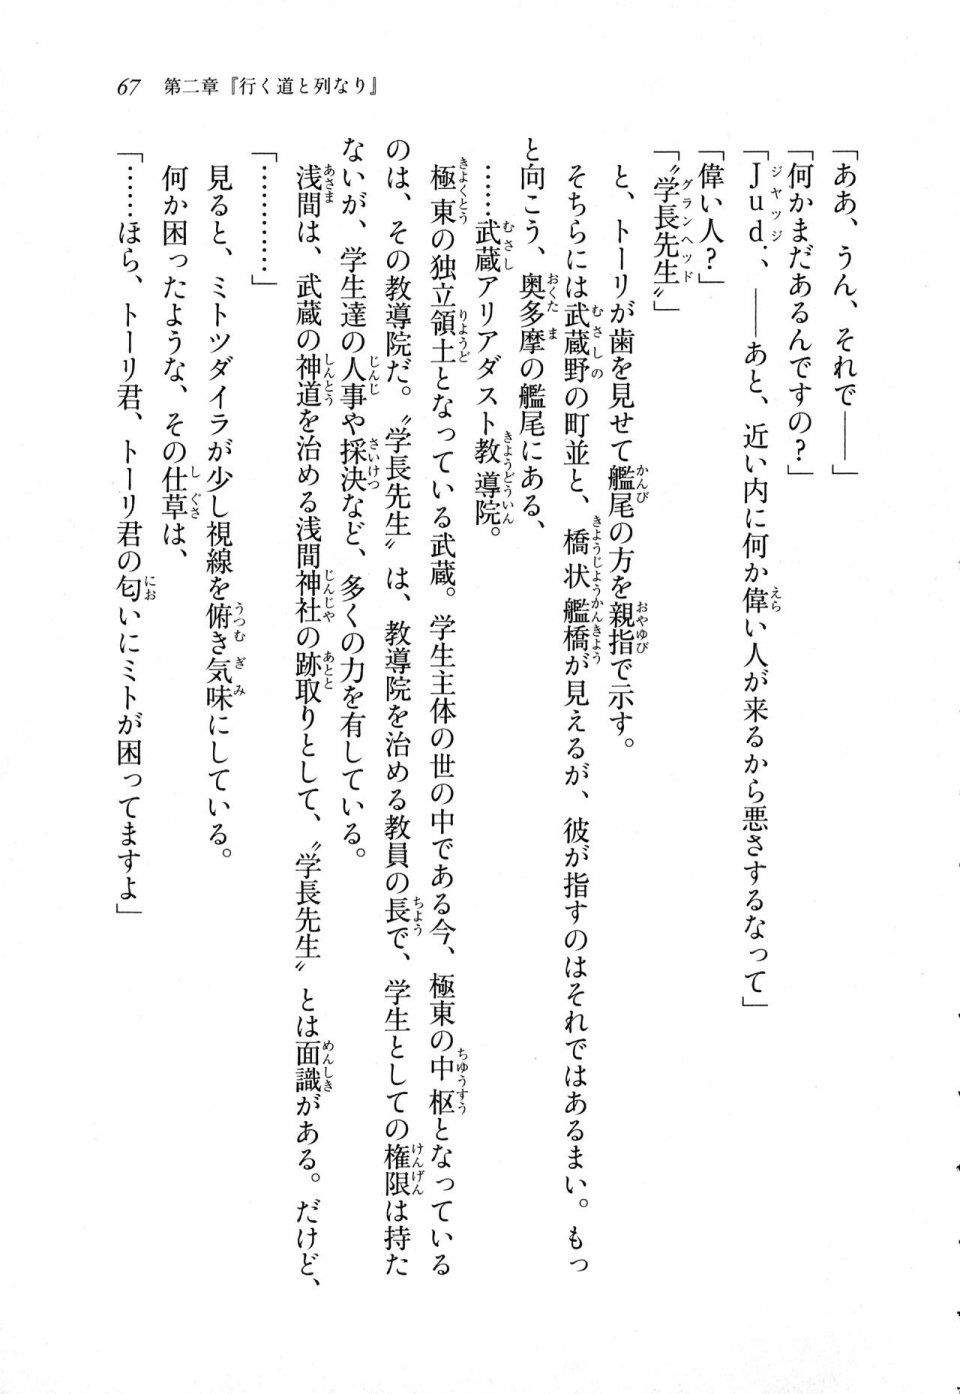 Kyoukai Senjou no Horizon LN Sidestory Vol 1 - Photo #65